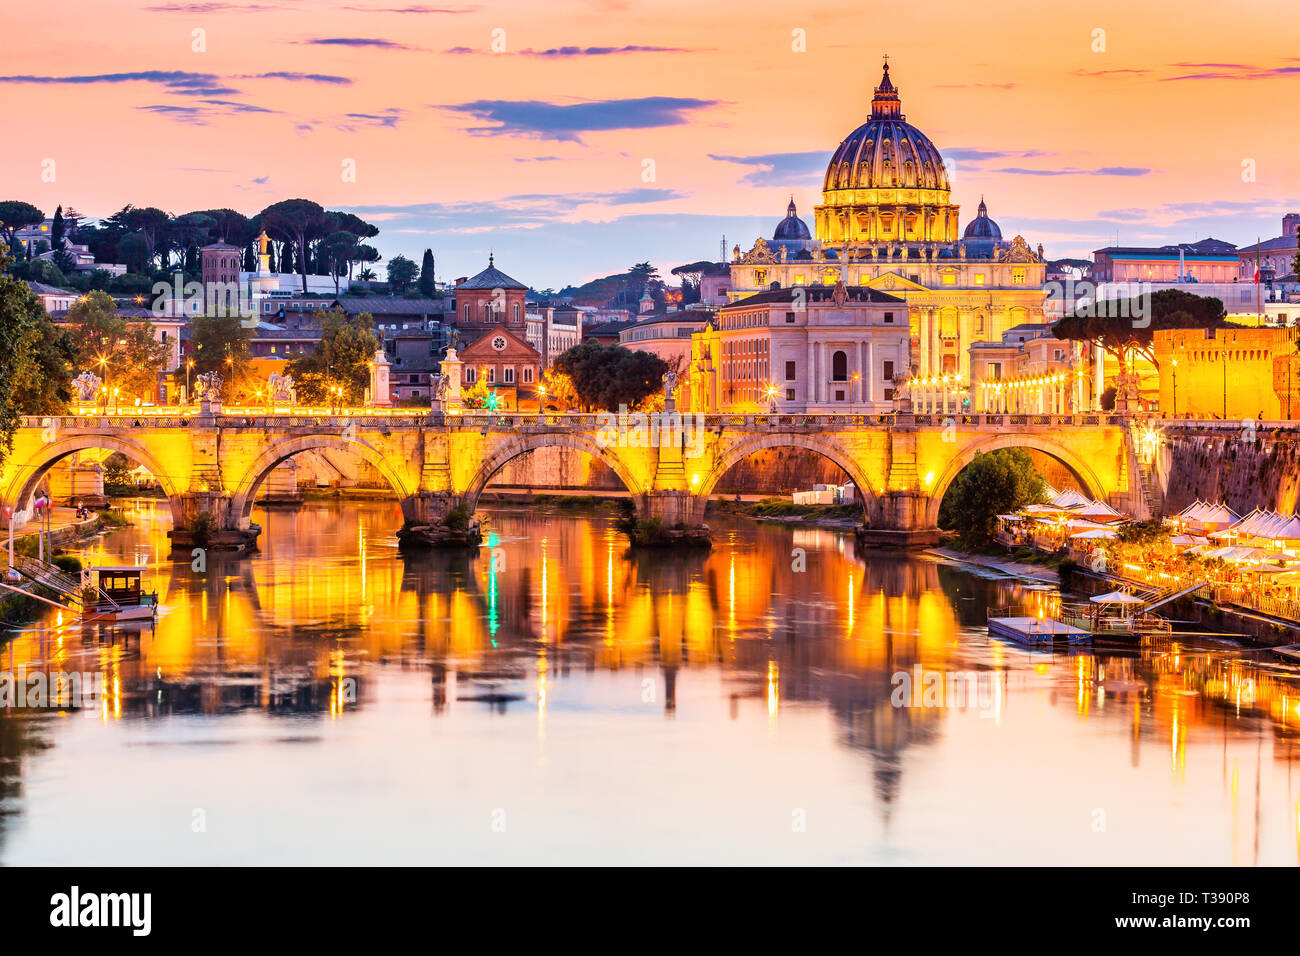 Ciudad del Vaticano. La Basílica de San Pedro y el puente de Sant'Angelo, a lo largo del río Tíber. Roma, Italia. Foto de stock